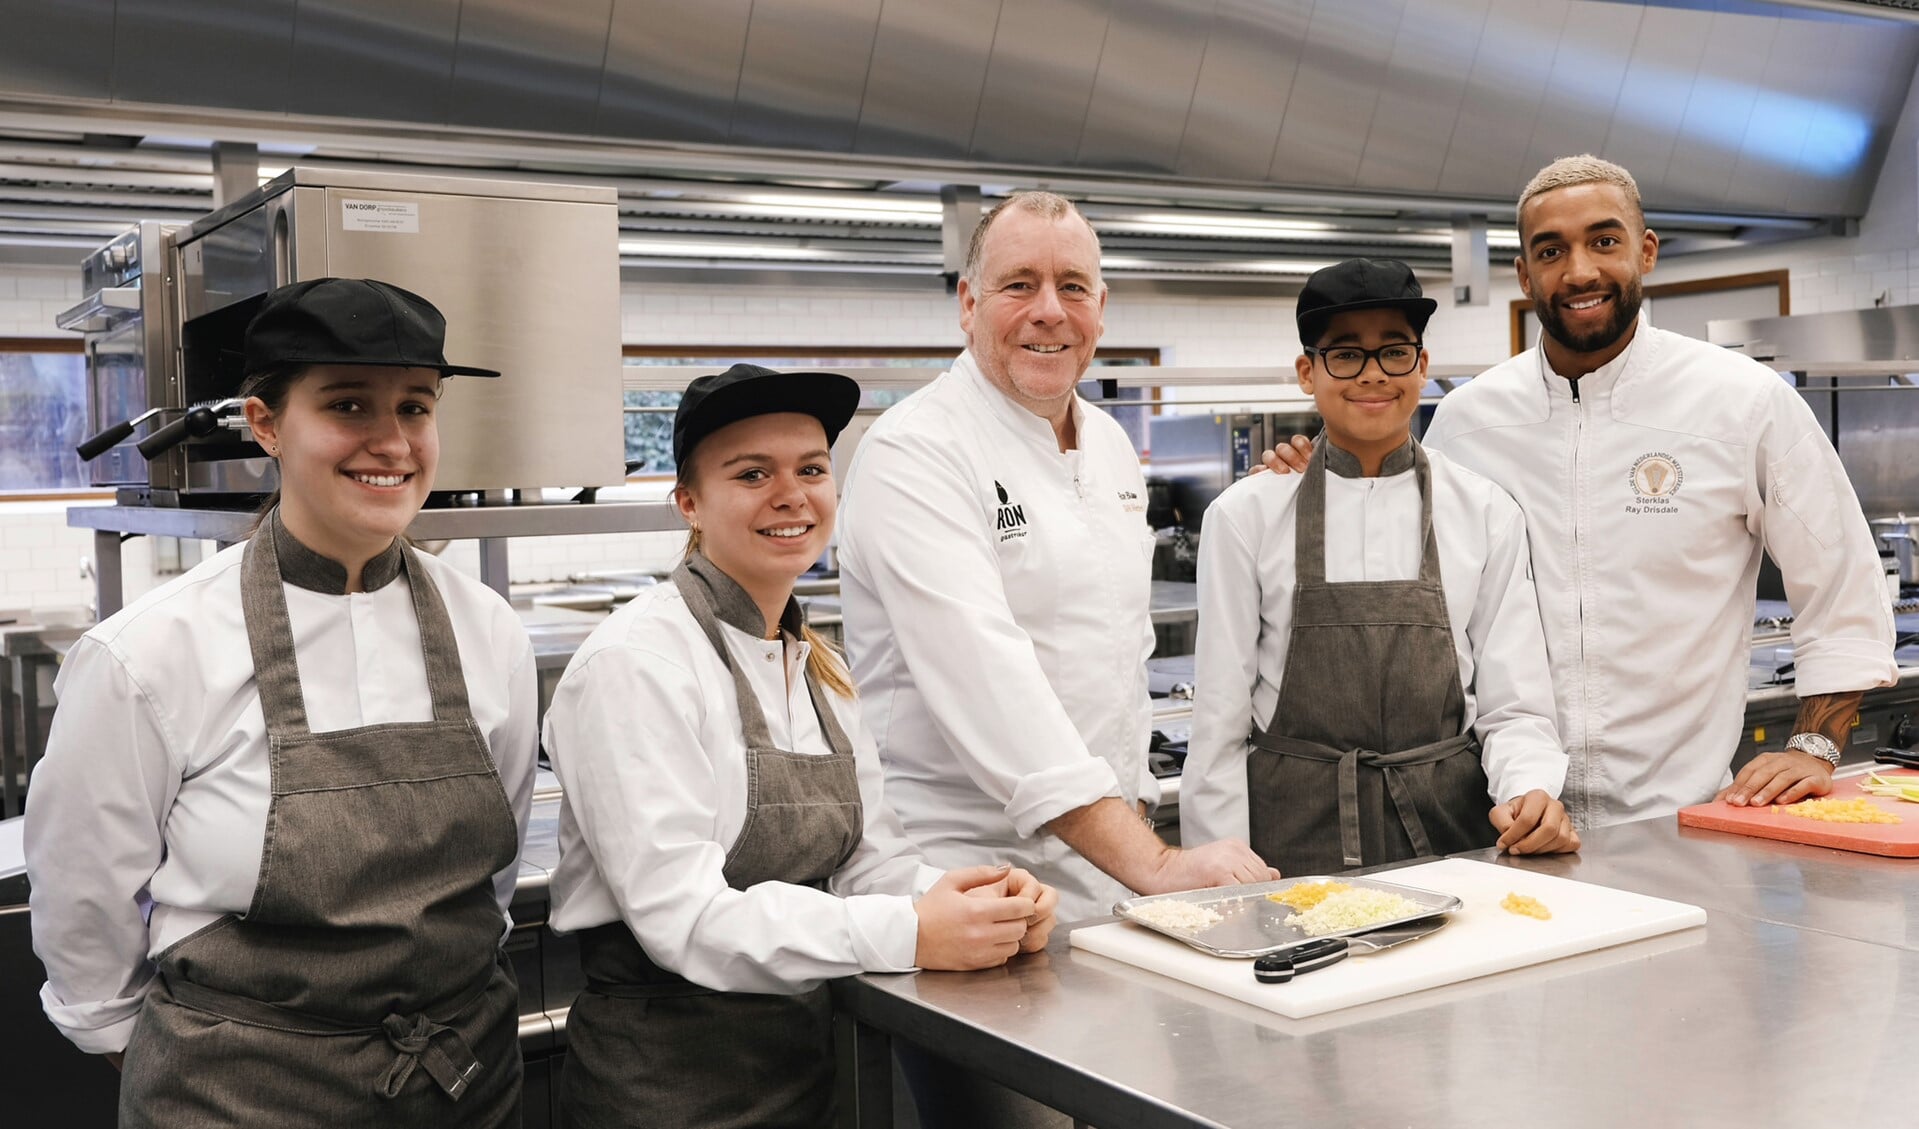 Samen met Ron Blaauw en zijn team leren de leerlingen werken met de beste ingrediënten en de beste koks.